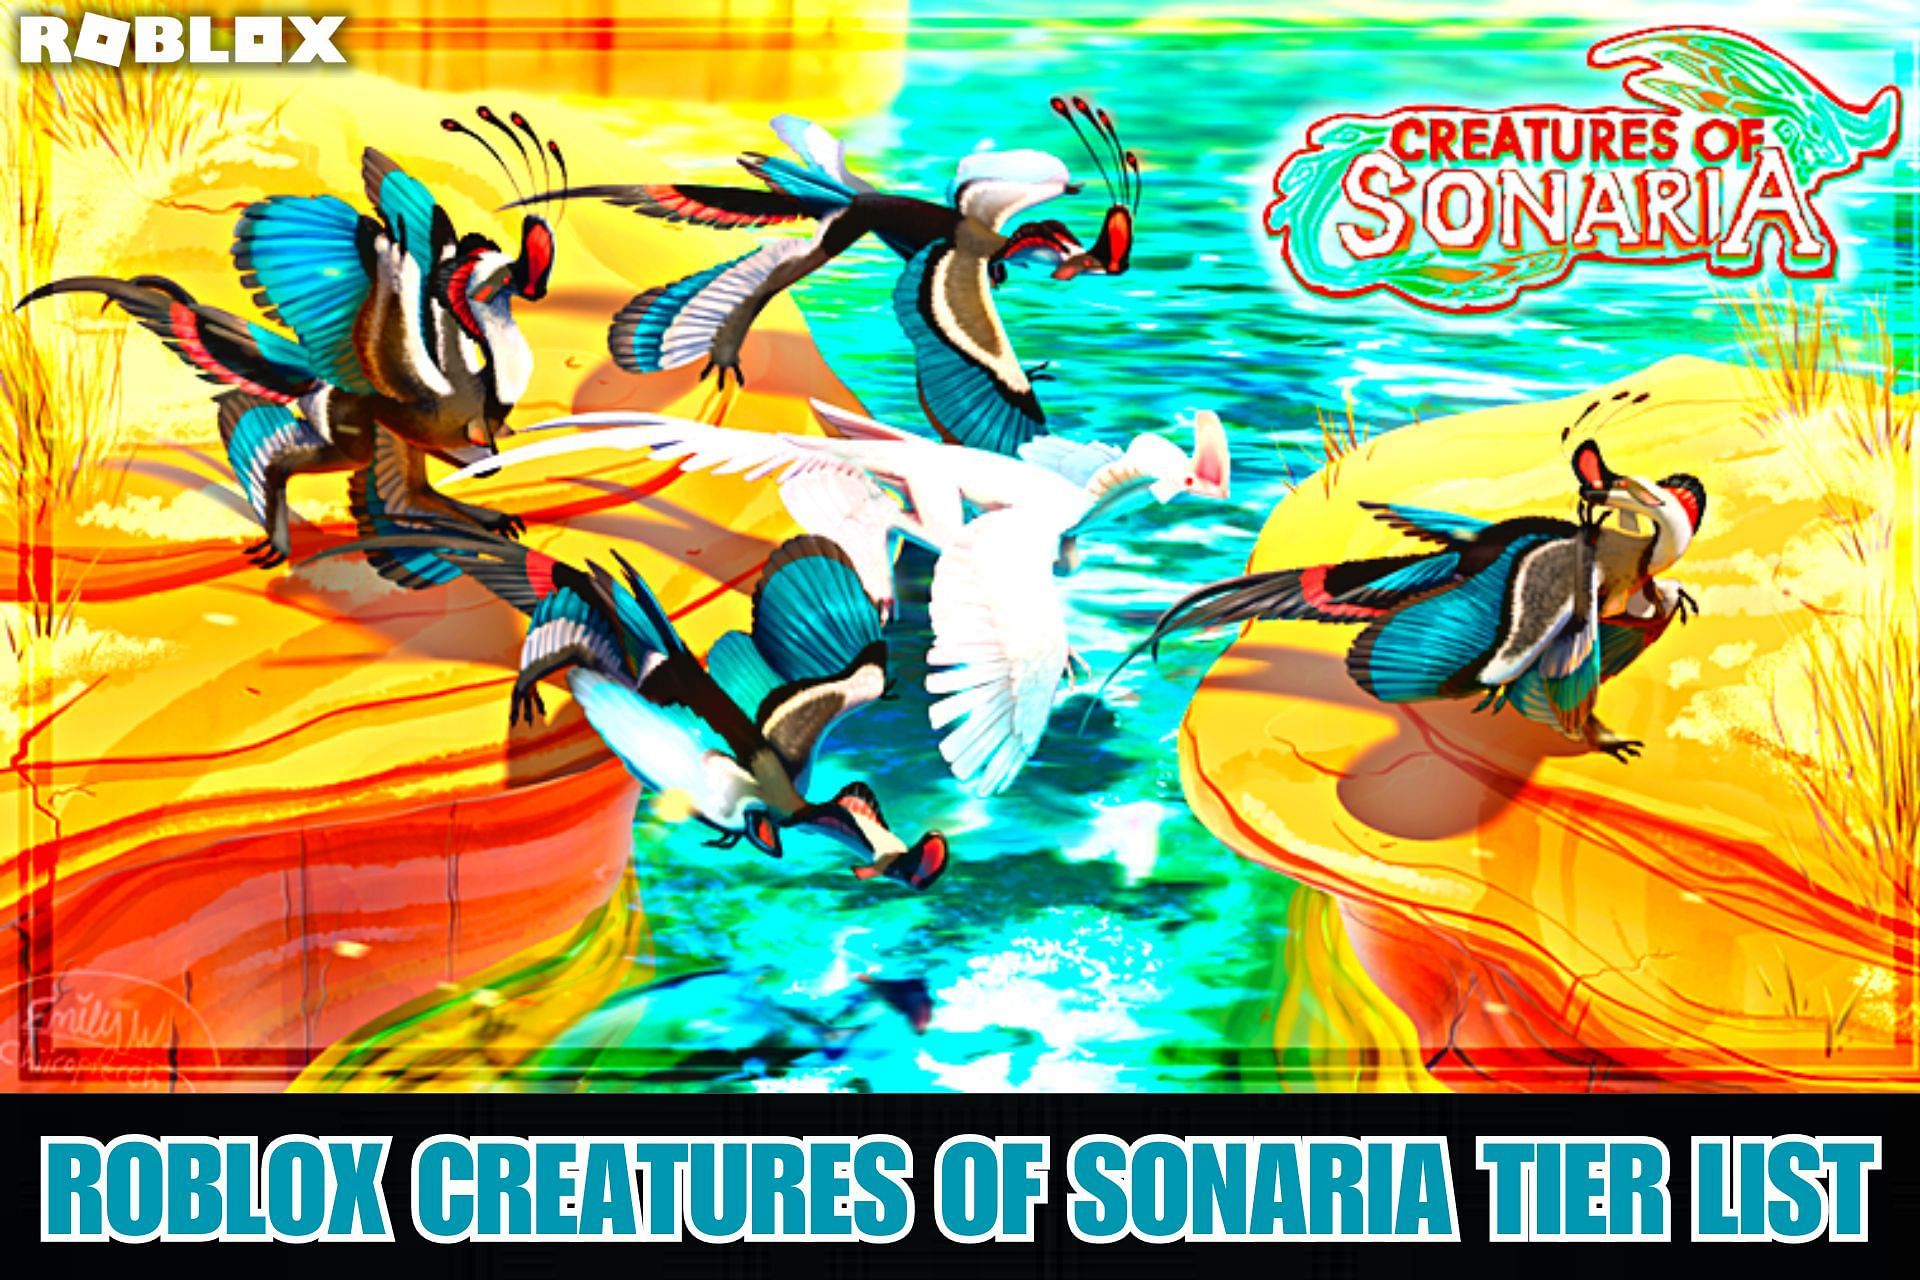 Trade Roblox Creatures of Sonaria Roblox Items